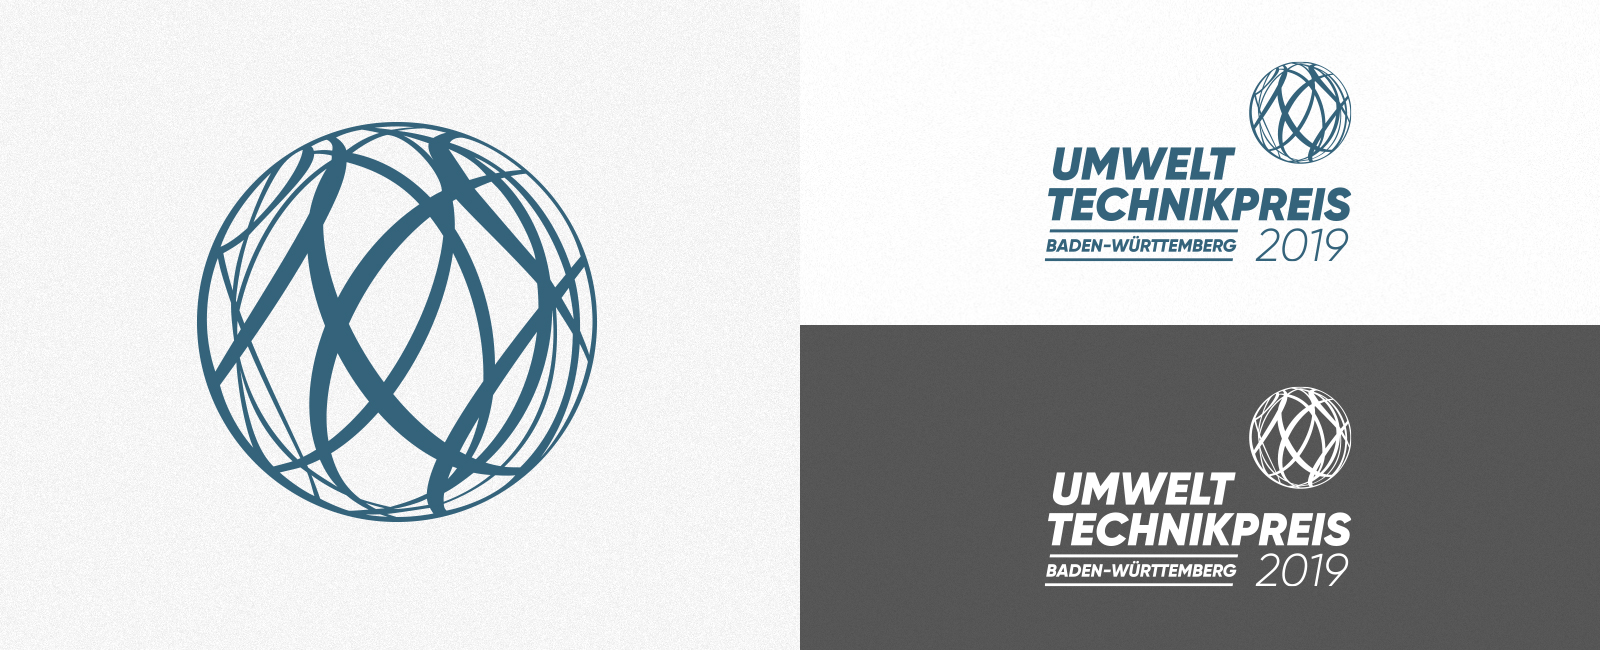 Umwelttechnikpreis UTP Logo